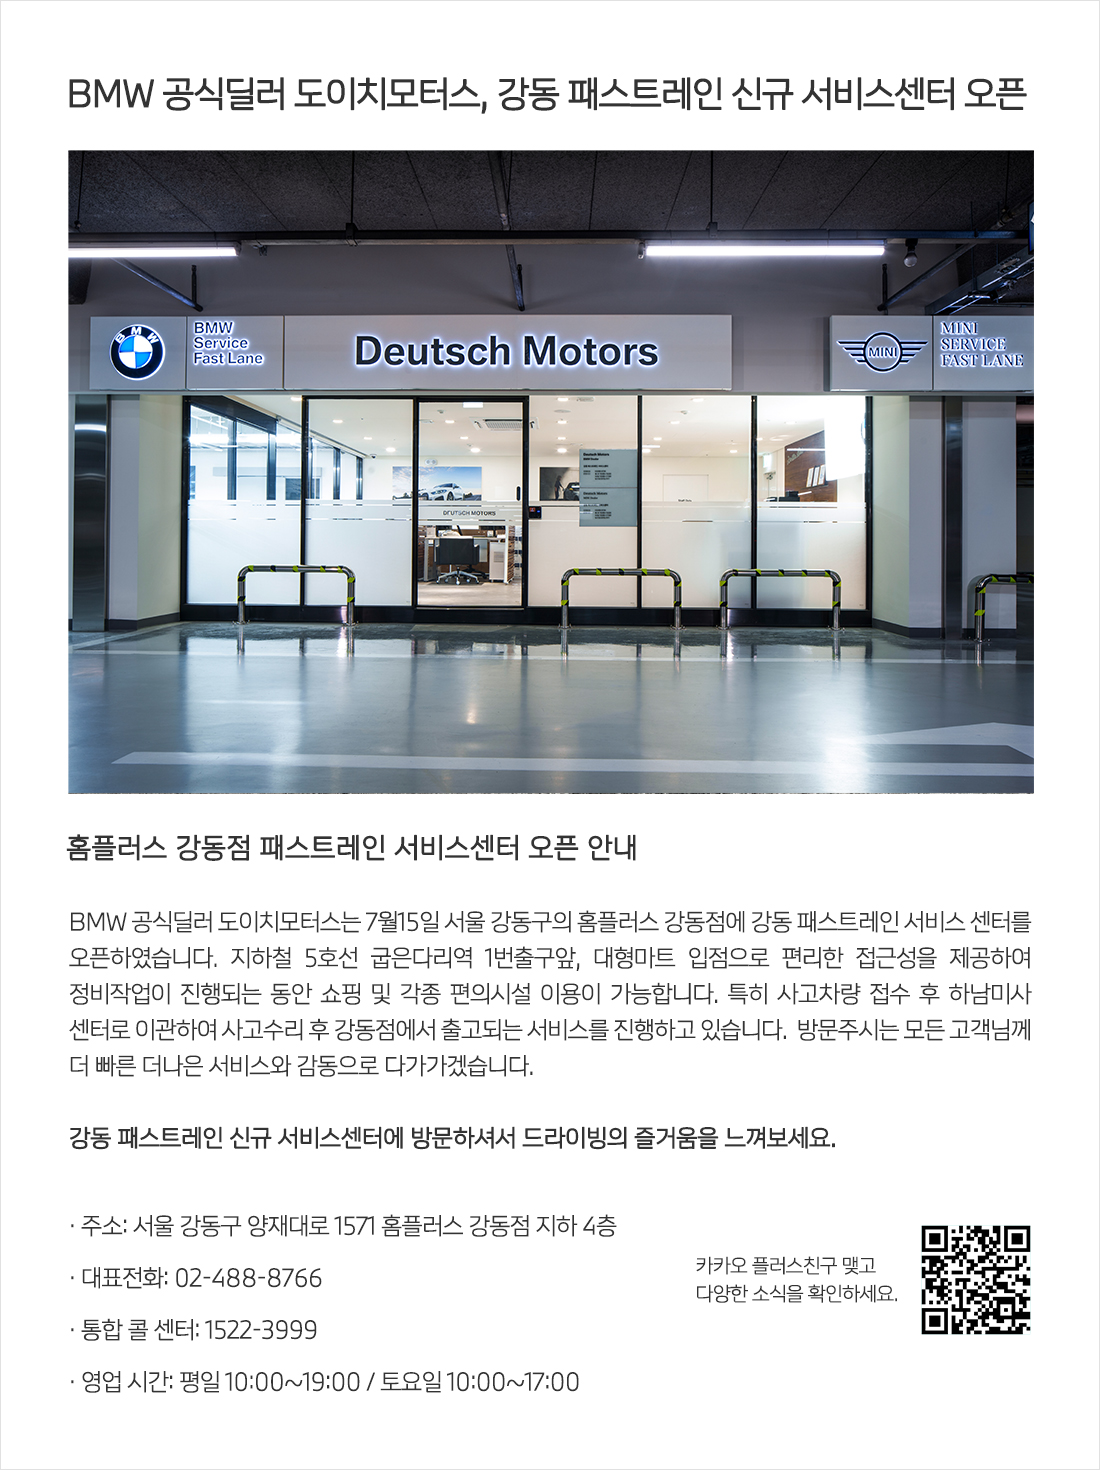 BMW 공식딜러 도이치모터스, 강동 패스트레인 신규 서비스센터 오픈